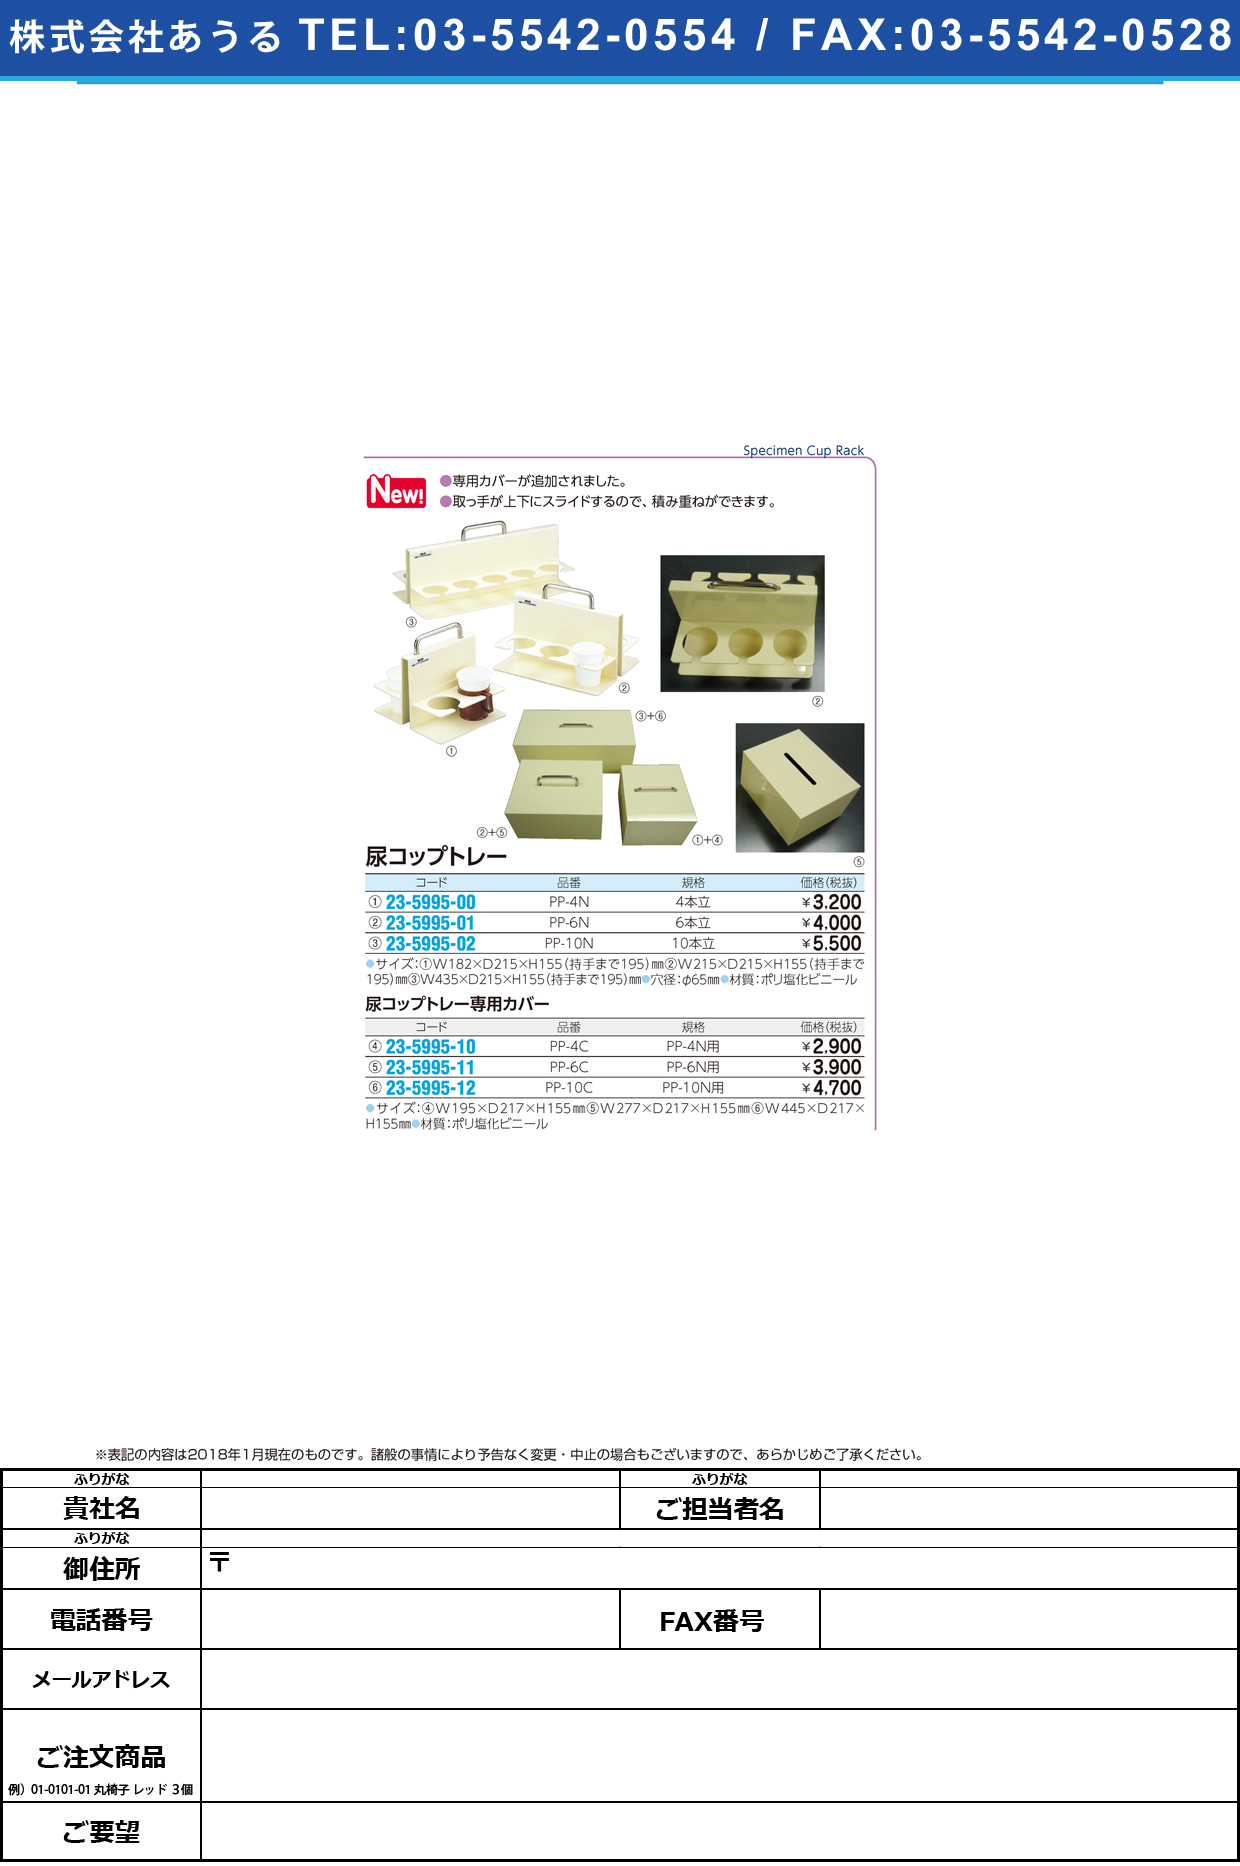 (23-5995-01)尿コップトレー（６人用） PP-6N ﾆｮｳｺｯﾌﾟﾄﾚｰ(6ﾆﾝﾖｳ)【1個単位】【2018年カタログ商品】